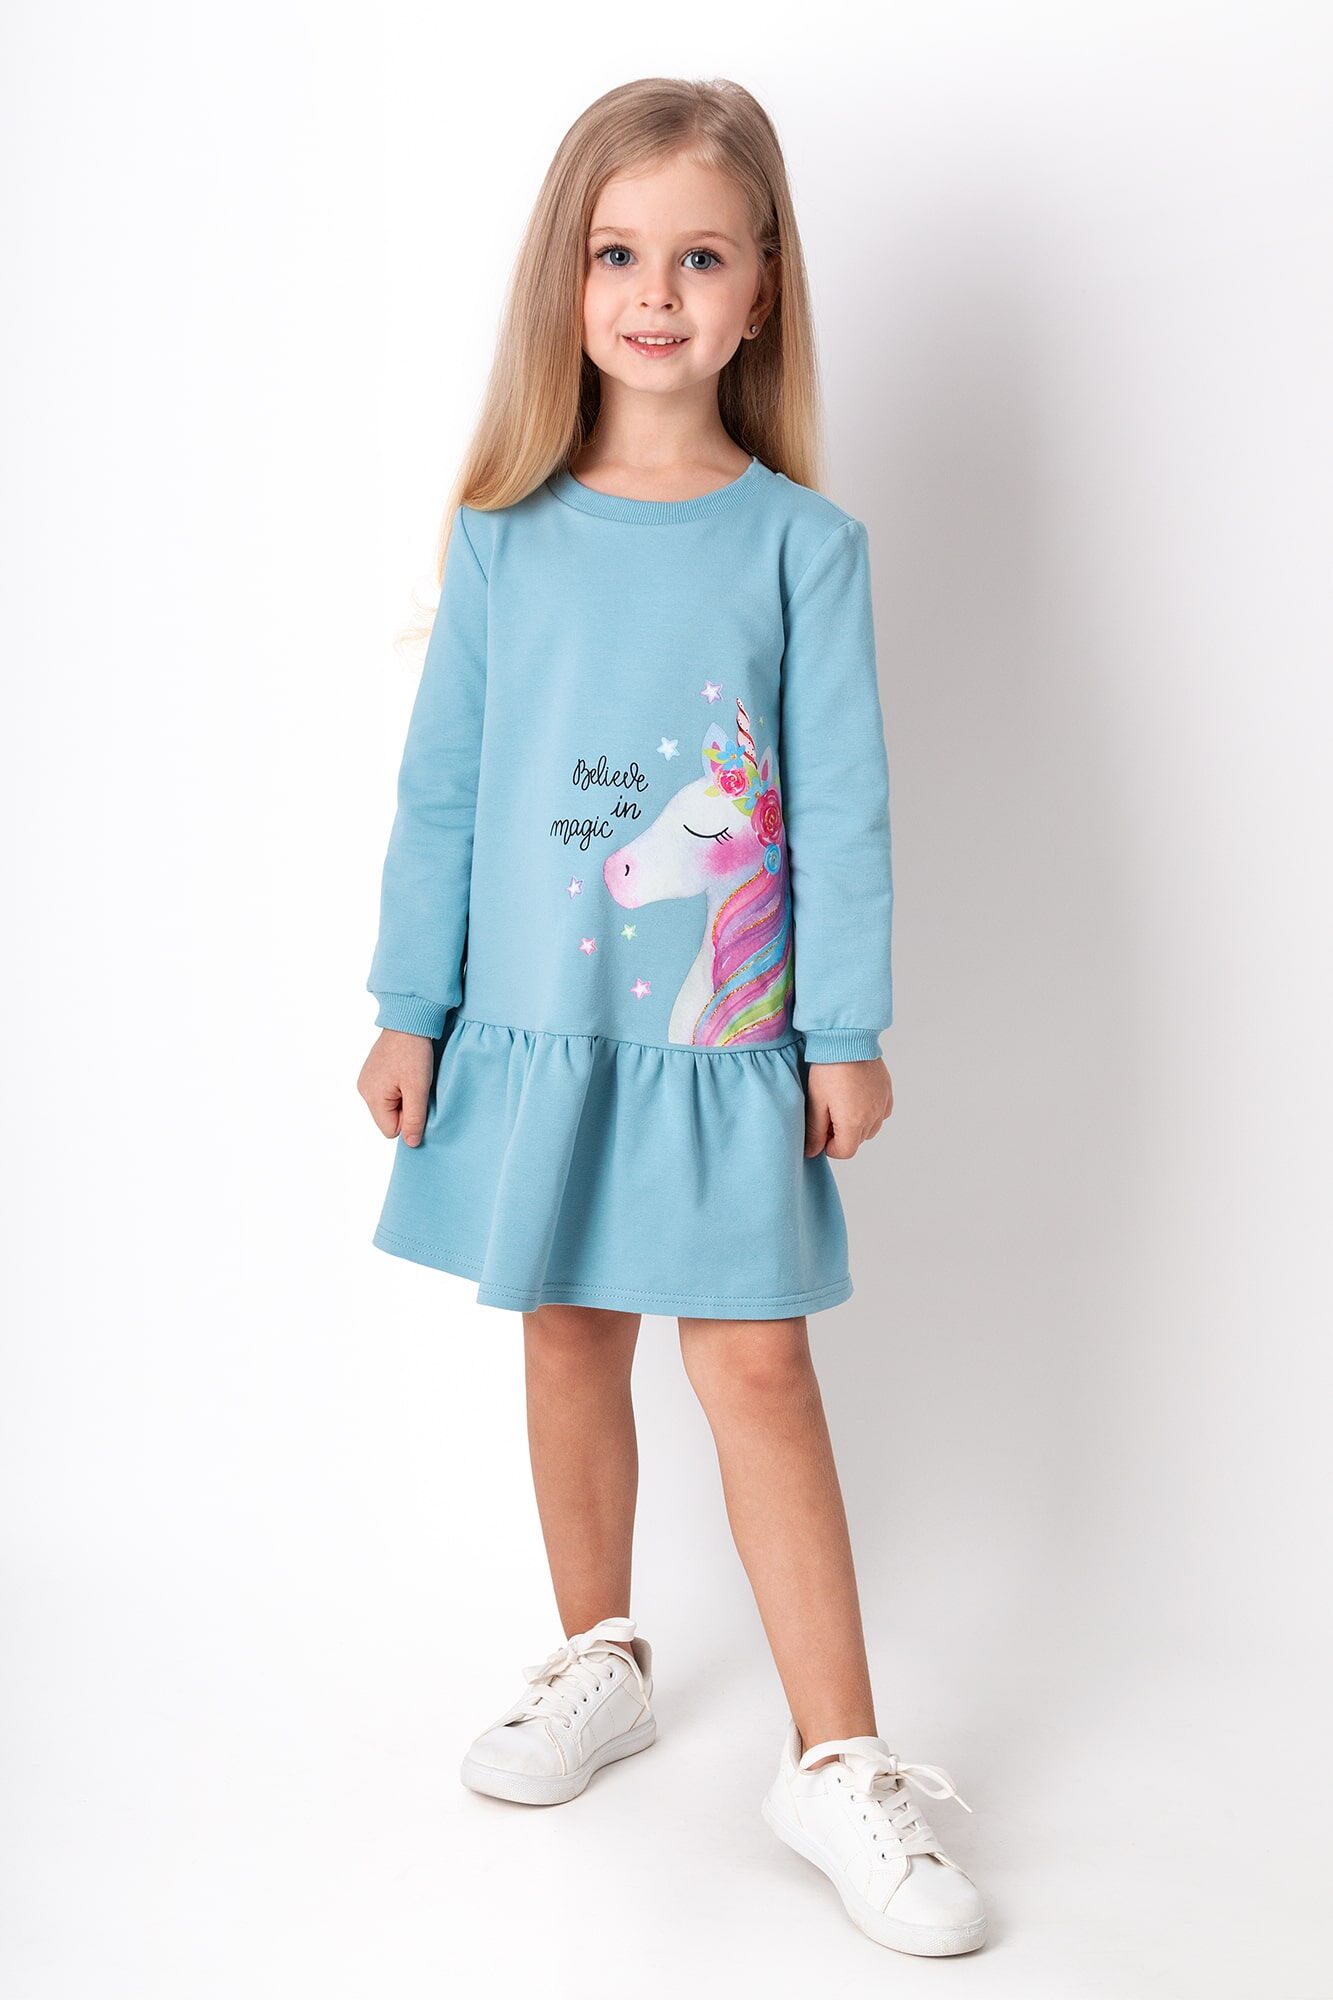 Трикотажное платье для девочки Mevis Единорог голубое 4301-04 - цена